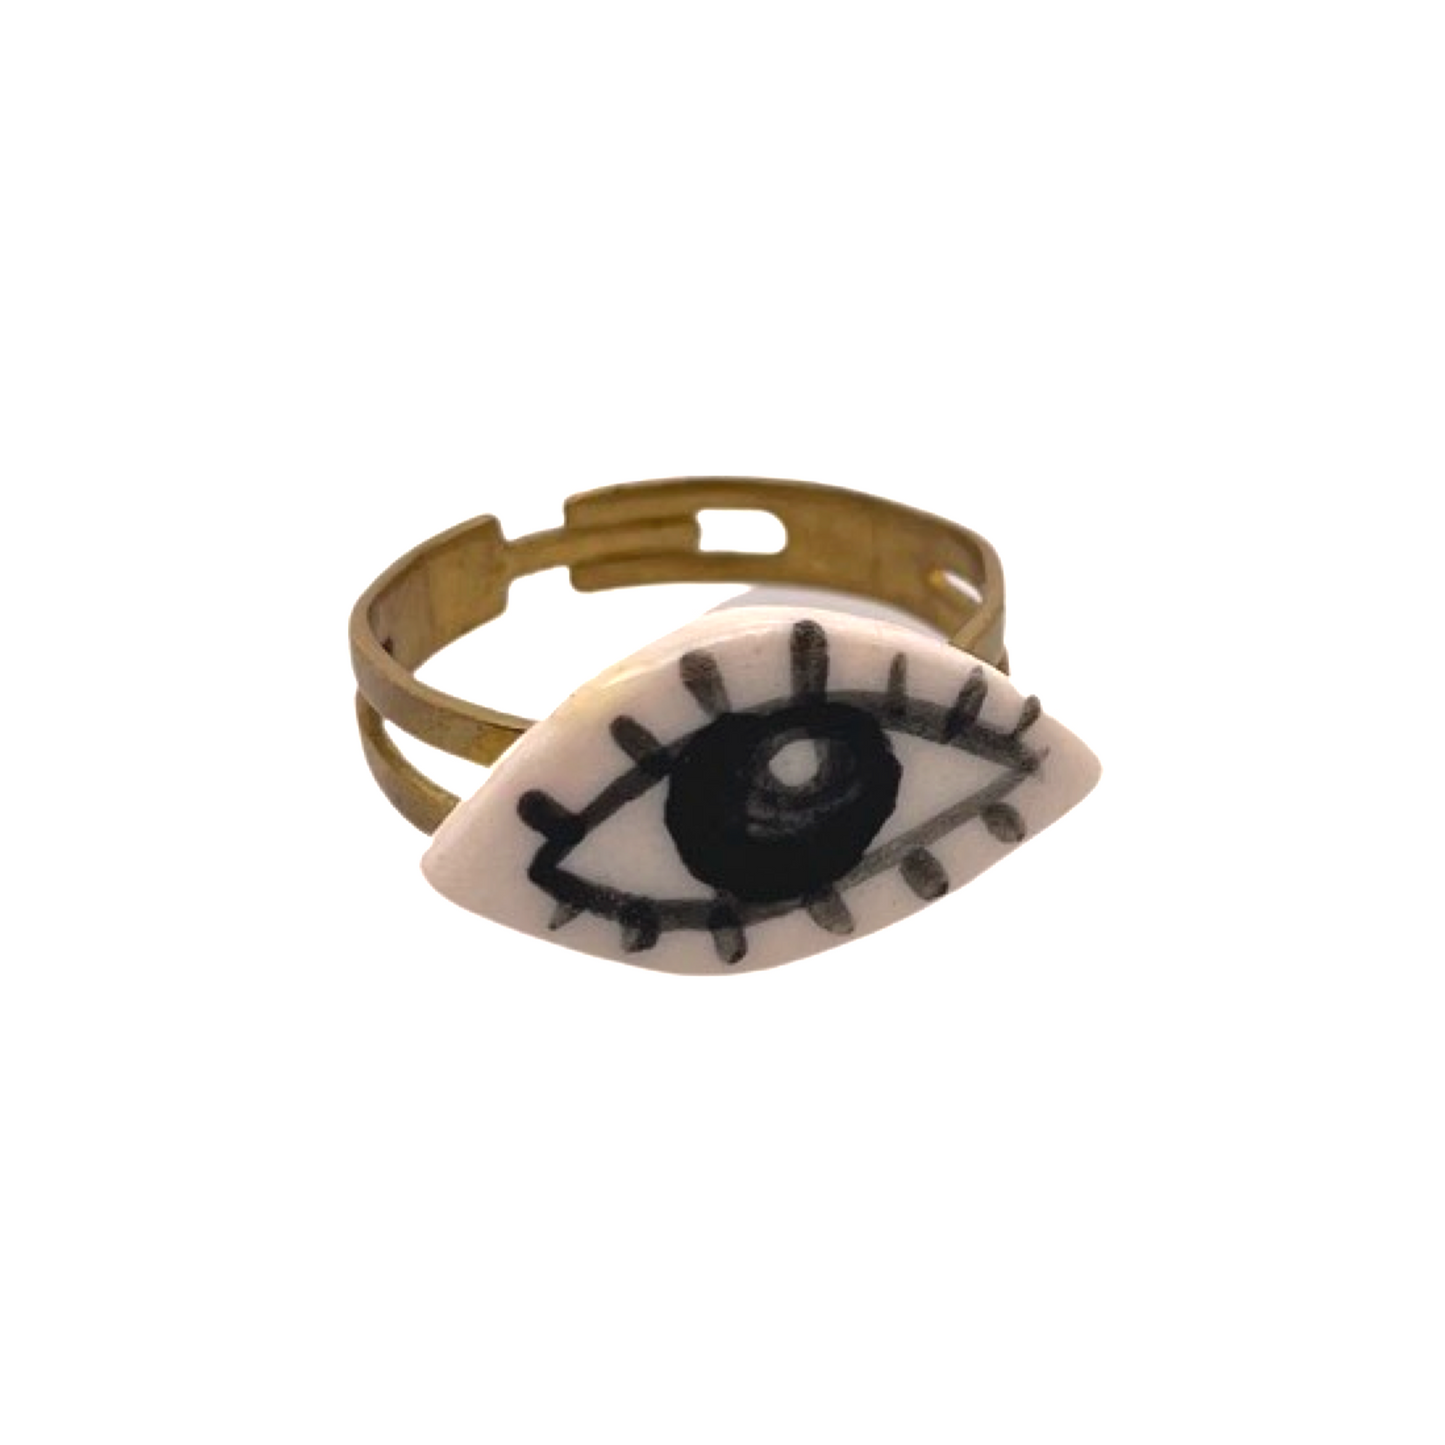 Painted Eye Ring